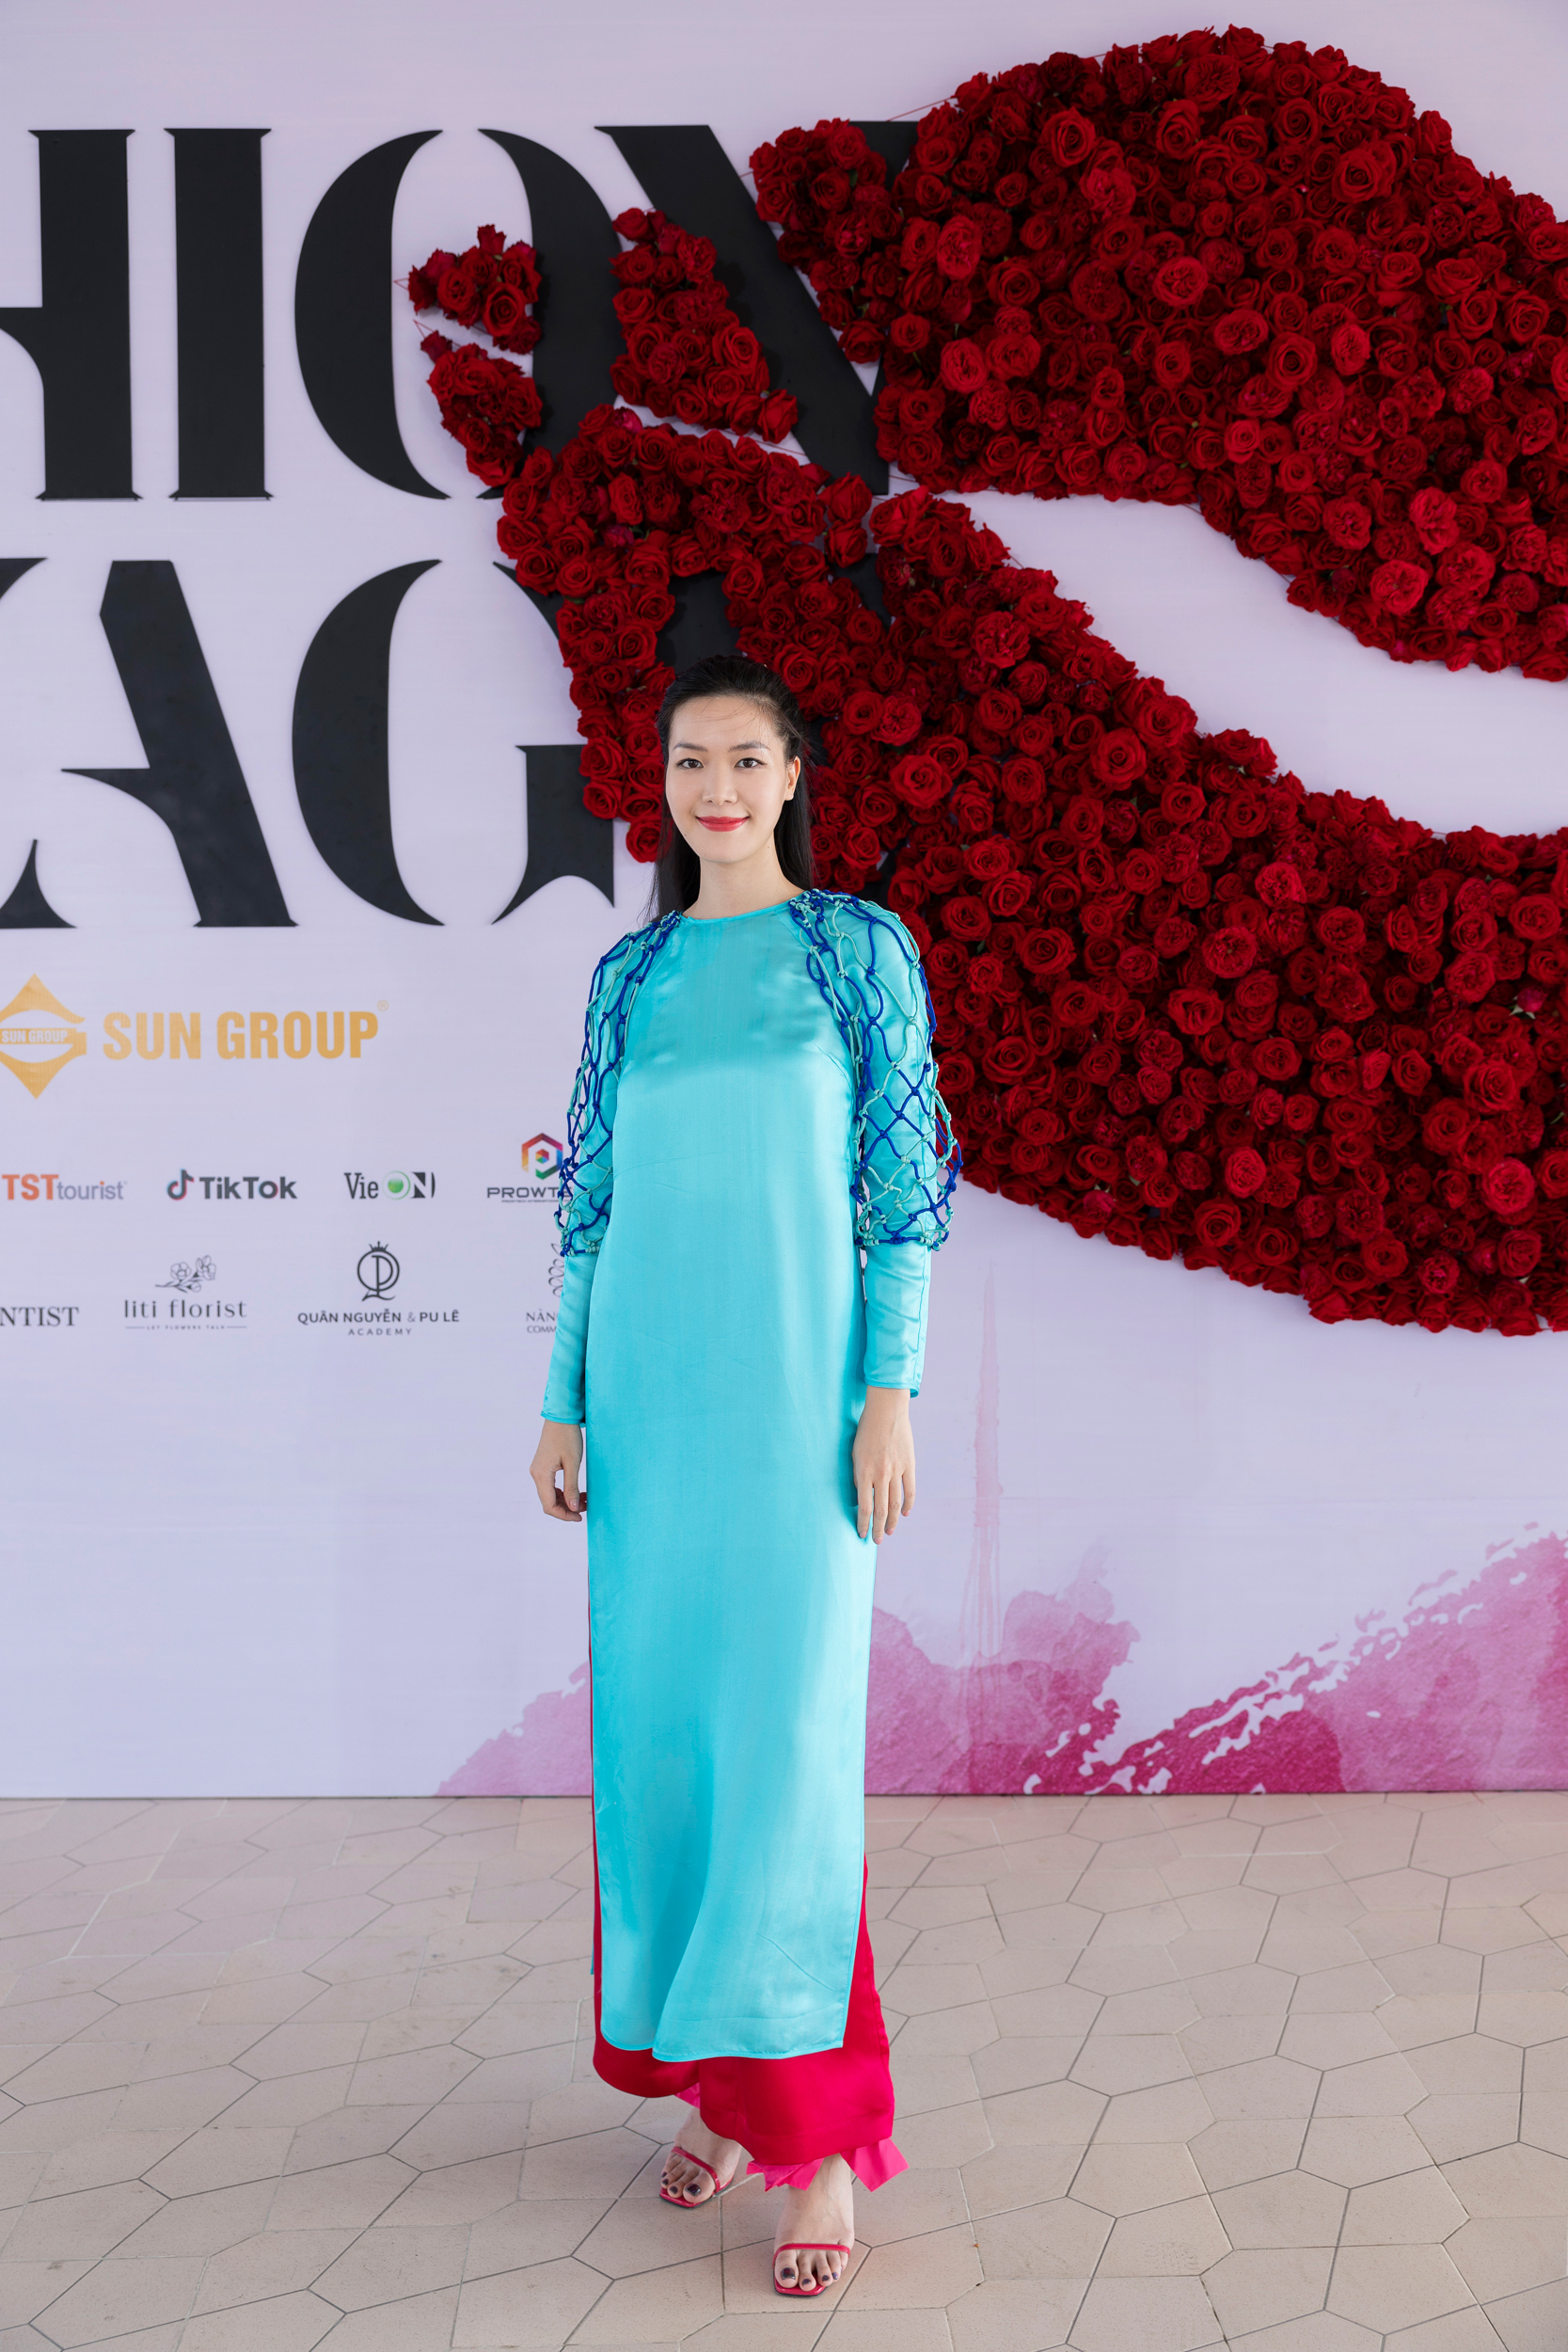 Hoa hậu Việt Nam 2008 Thùy Dung khoe sắc tại thảm đỏ show thời trang - Ảnh 1.